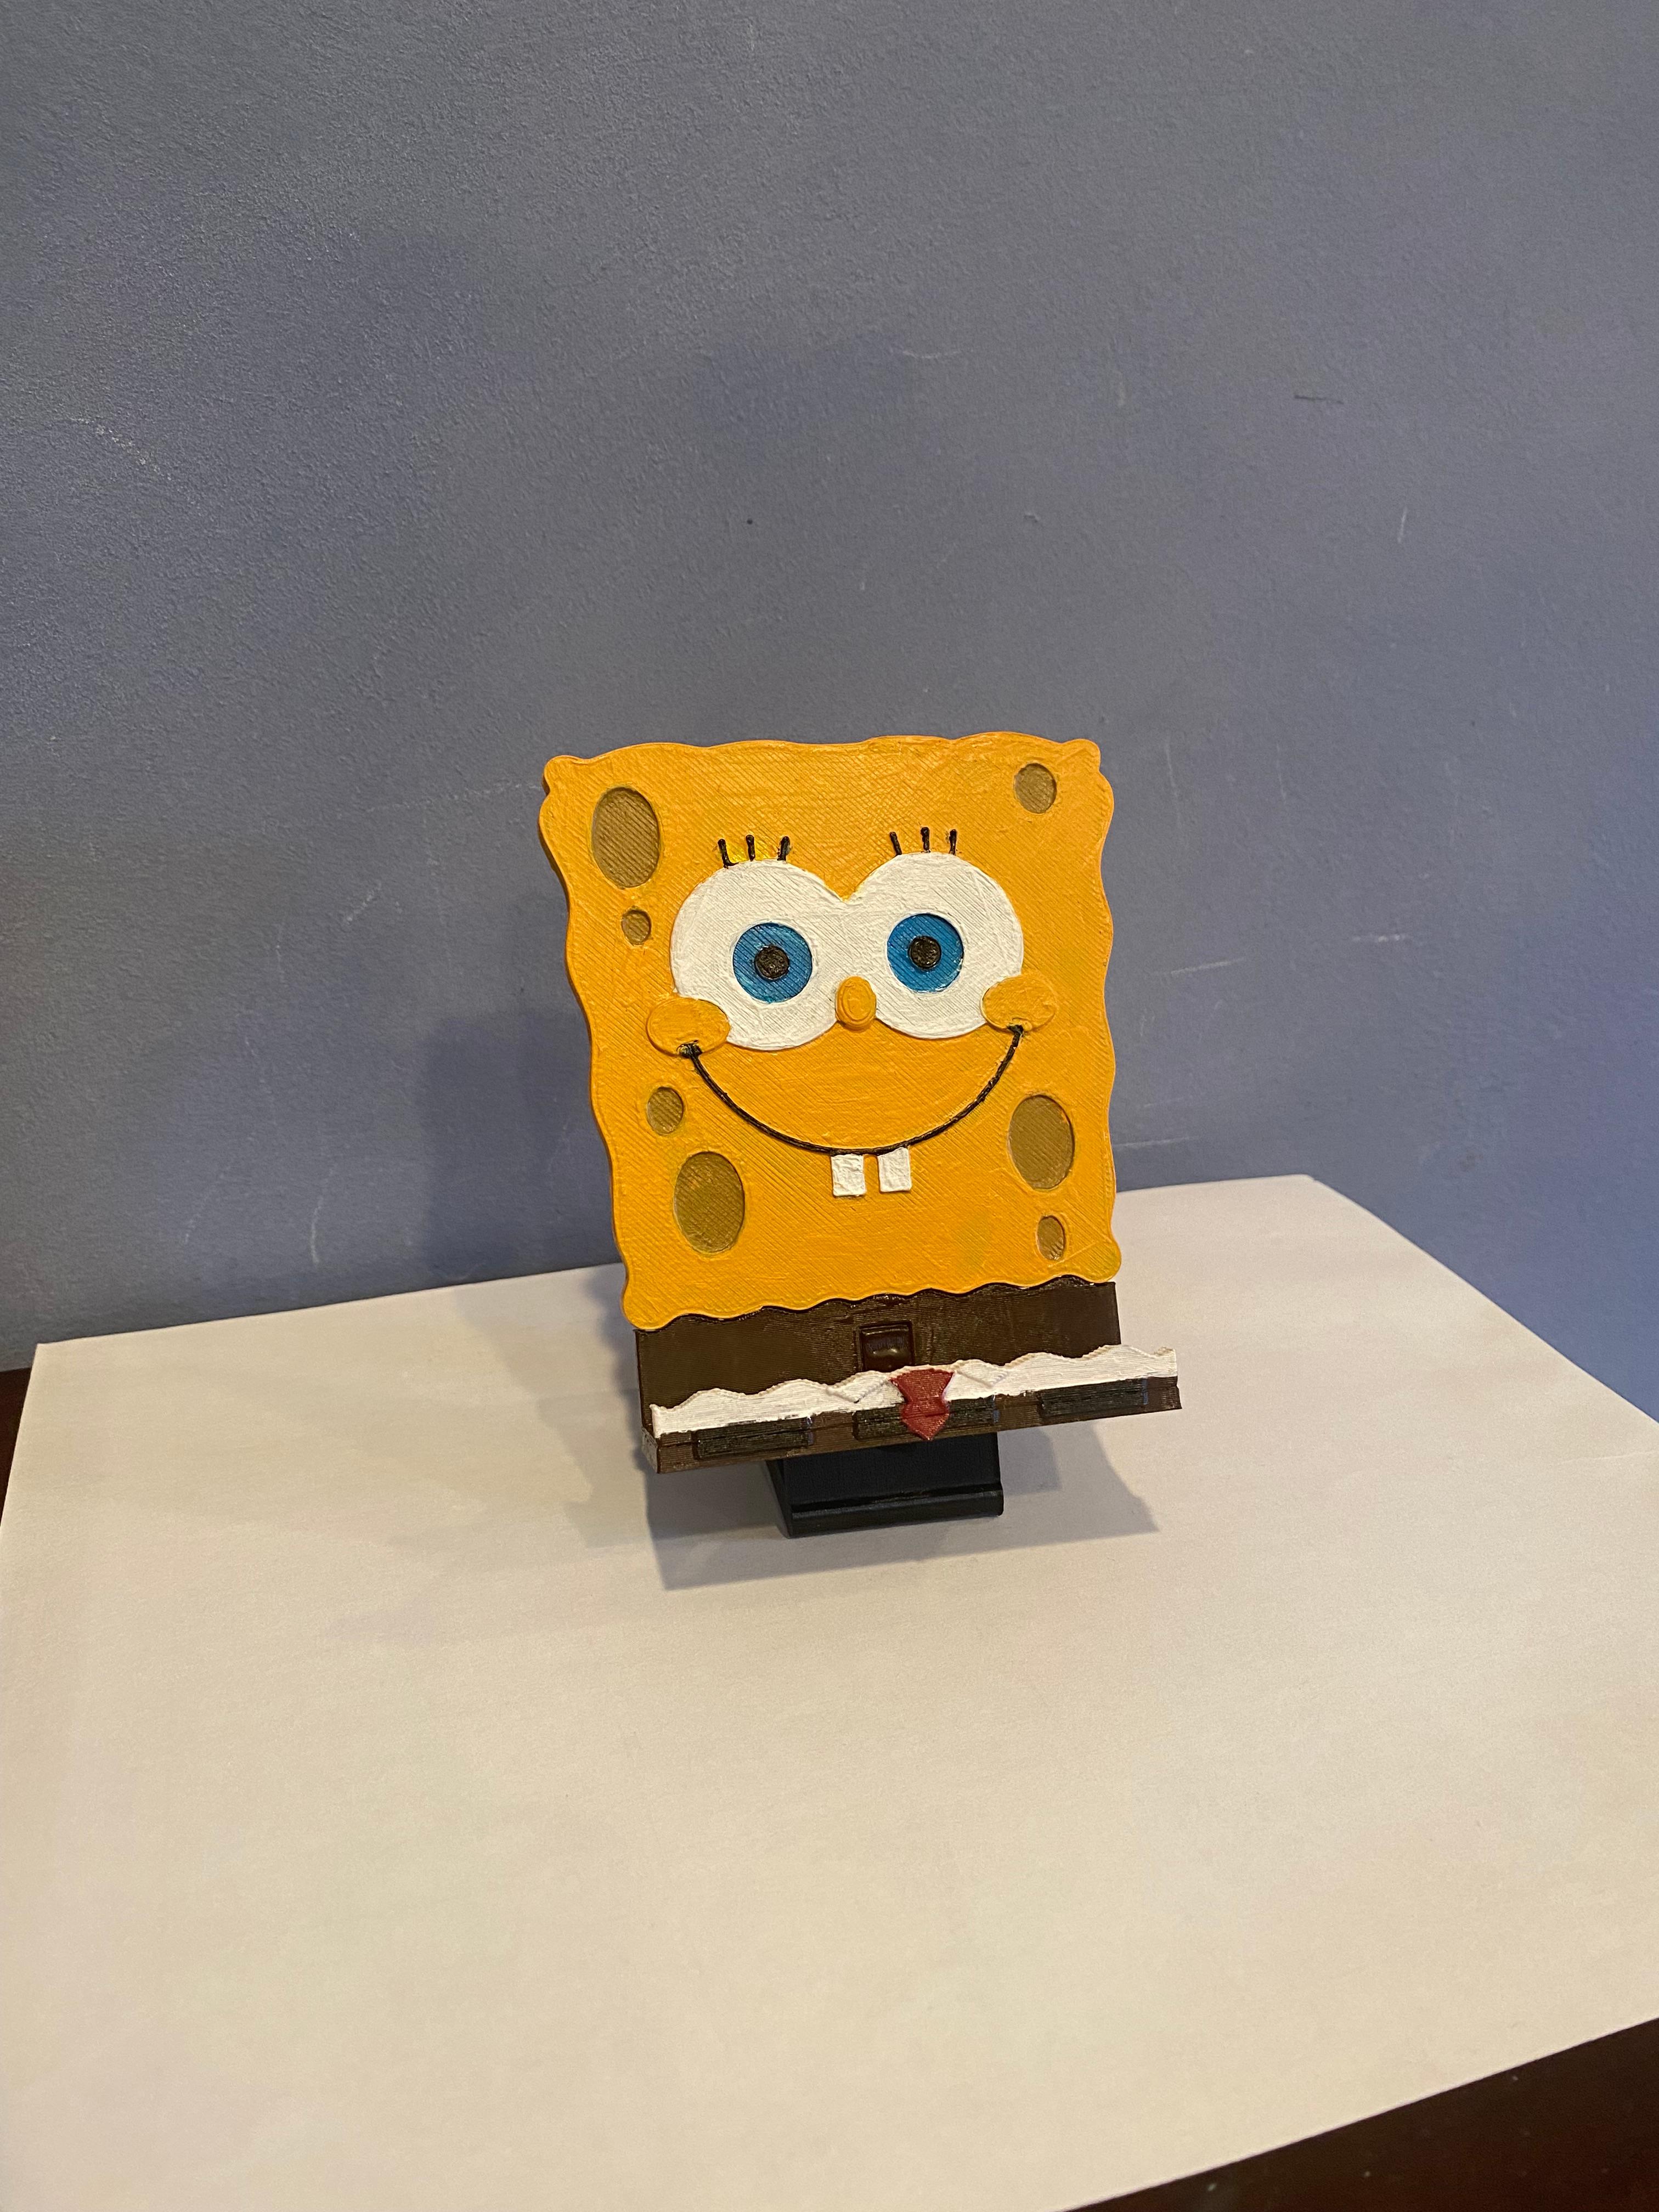 Spongebob themed phone holder 3d model